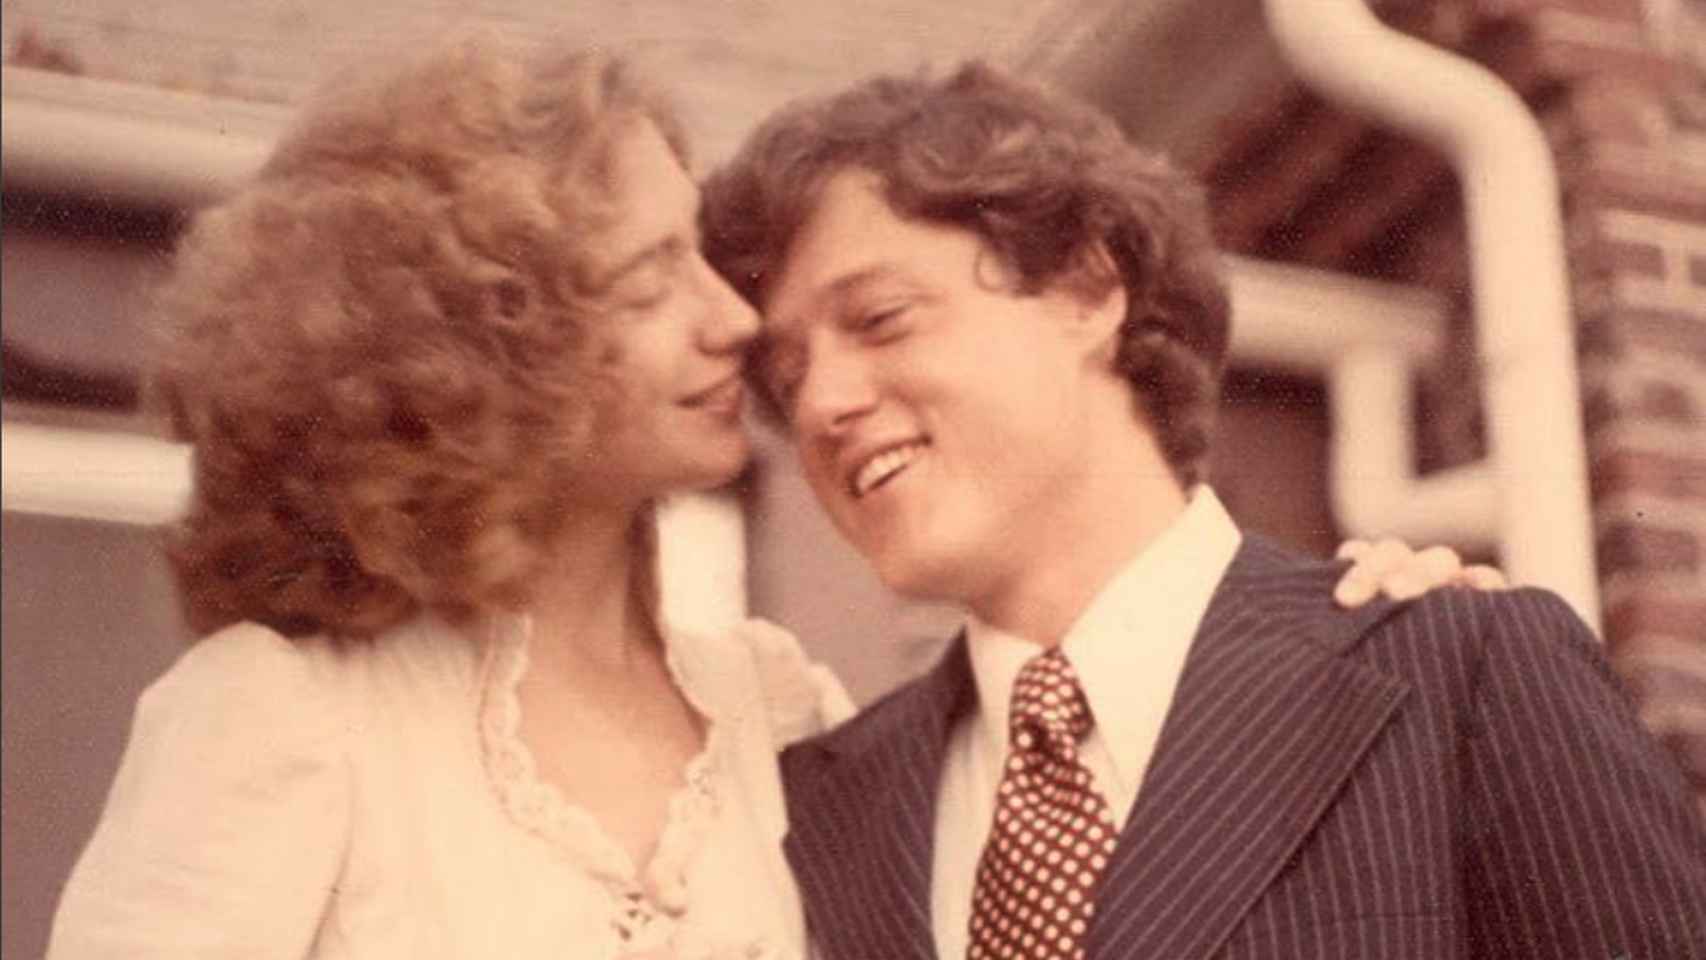 La boda de Bill y Hillary Clinton, celebrada en 1975